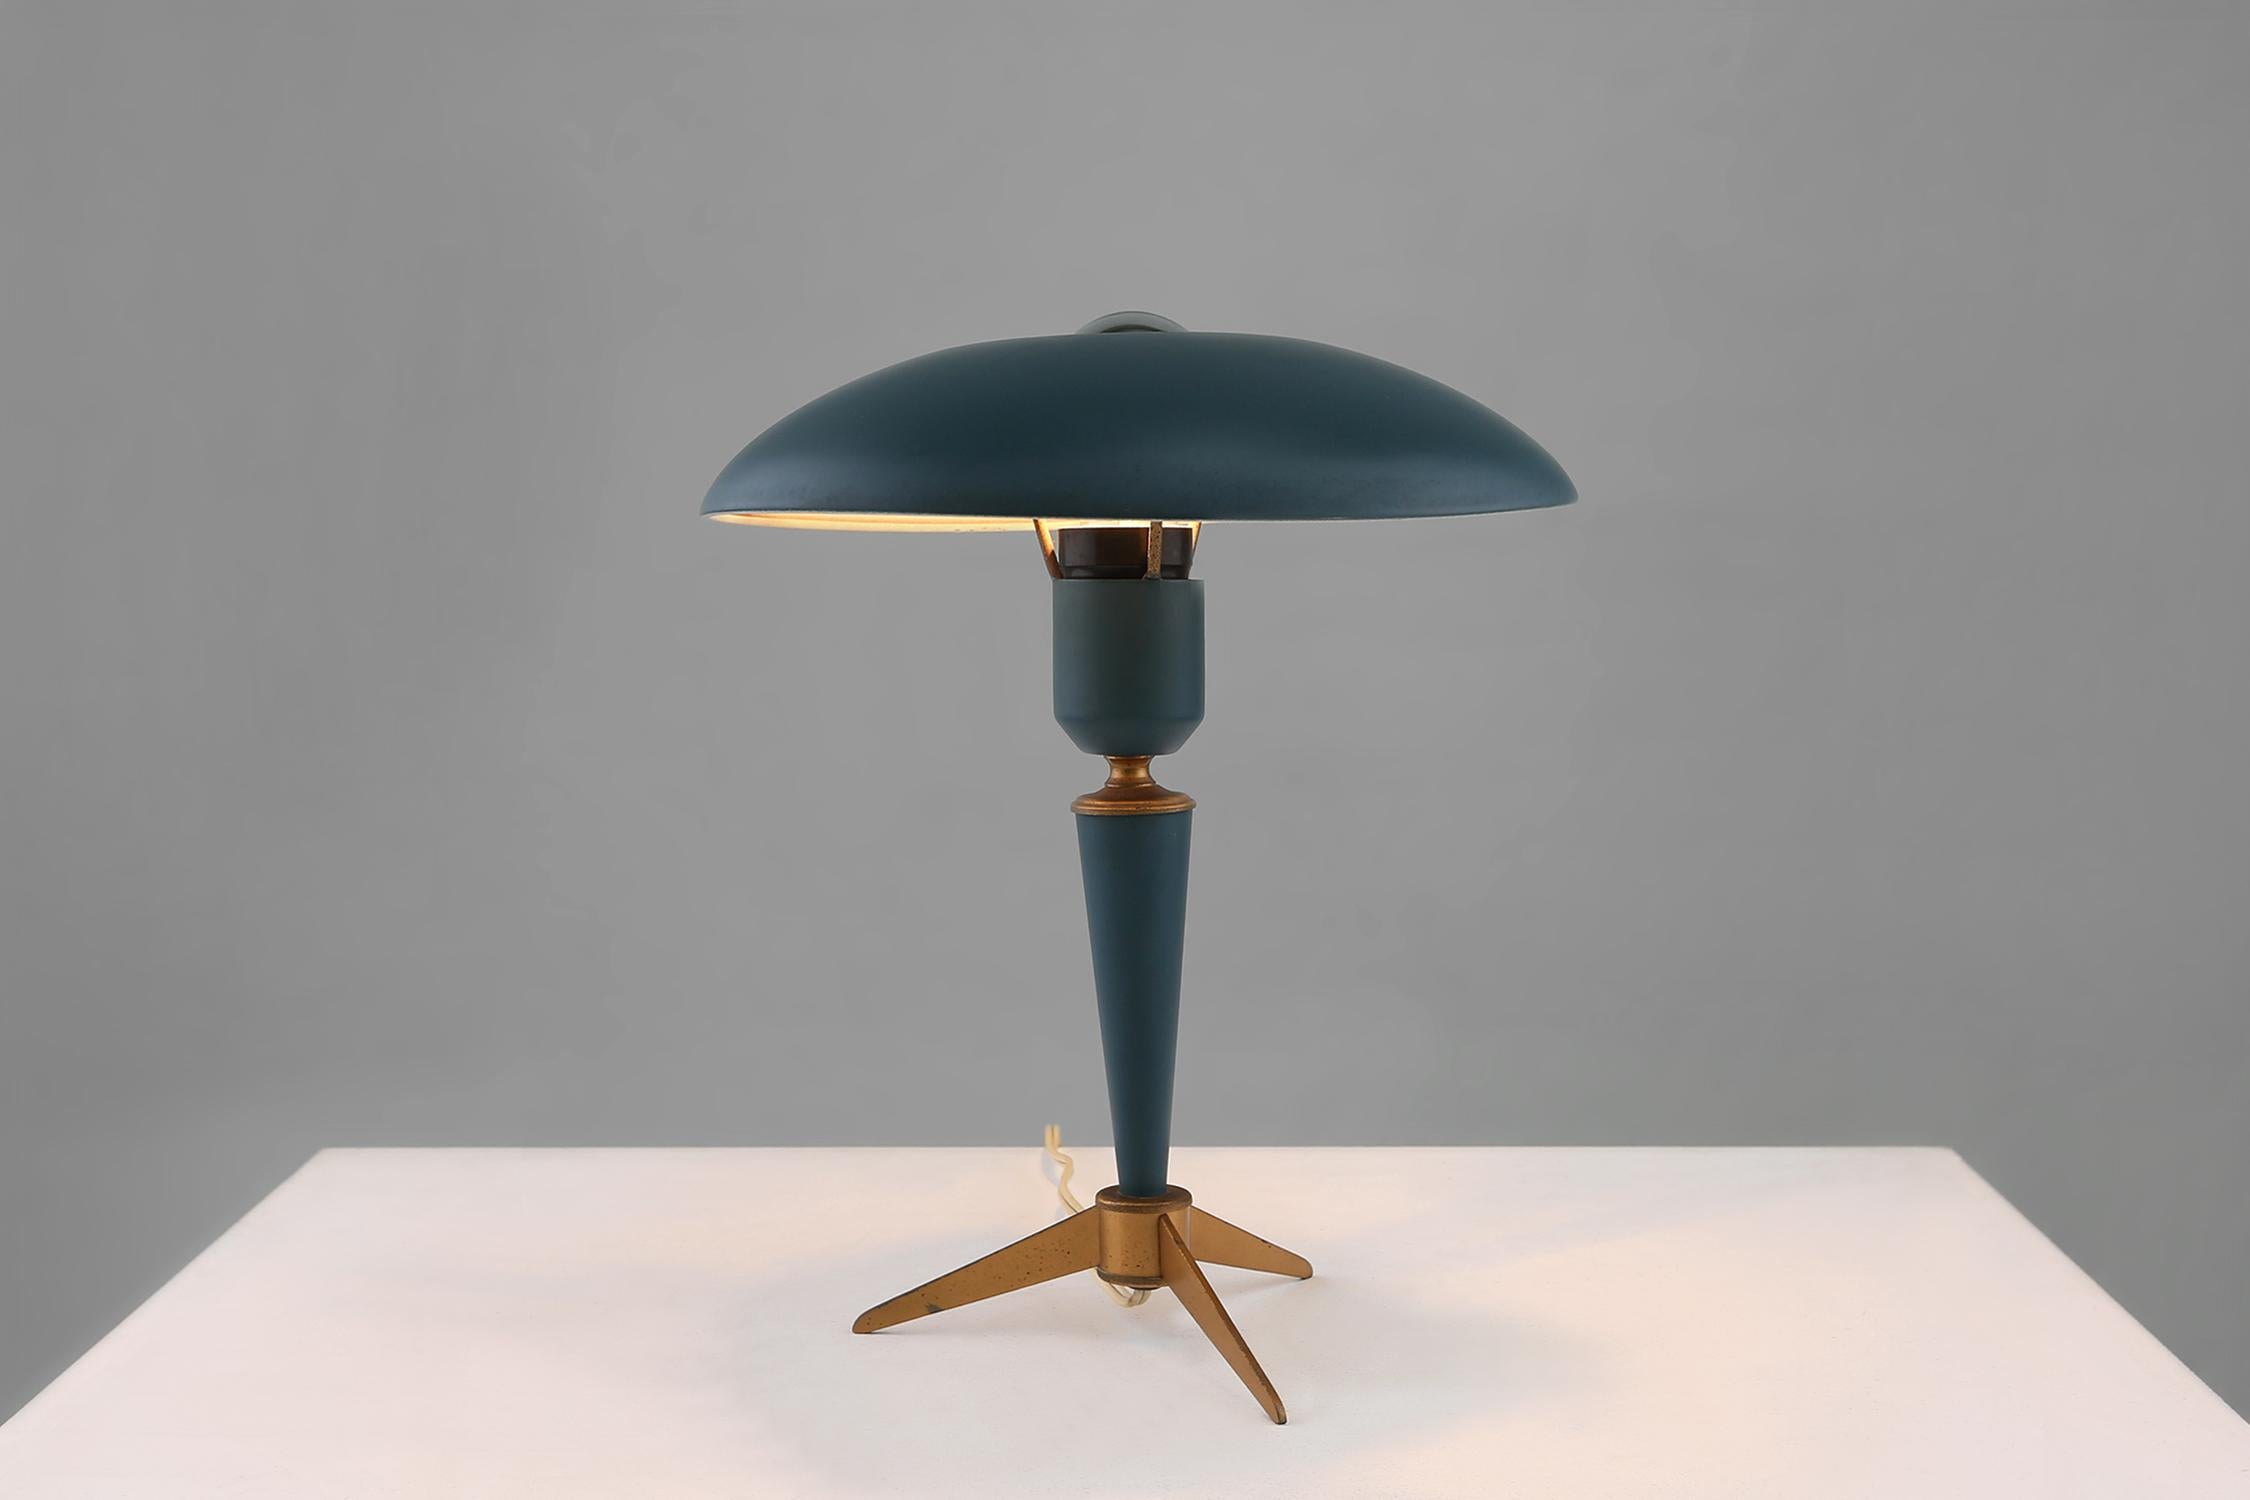 Lampe conçue par Louis Kalff pour Philips. Elle est fabriquée en métal et en vert foncé. Son design est intemporel et très élégant.